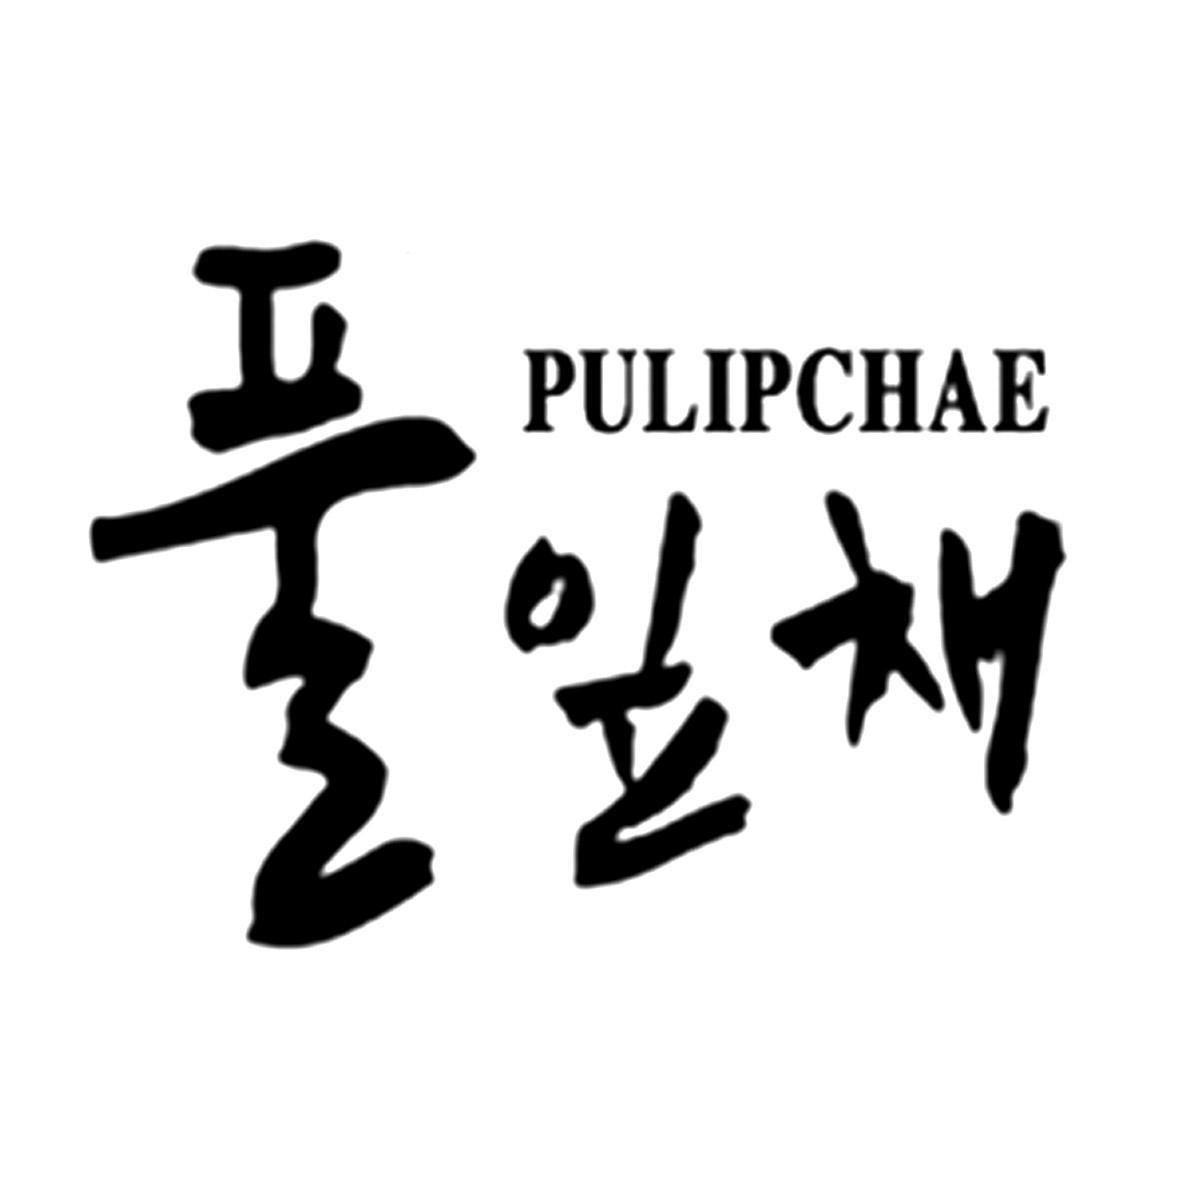 PULIPCHAE